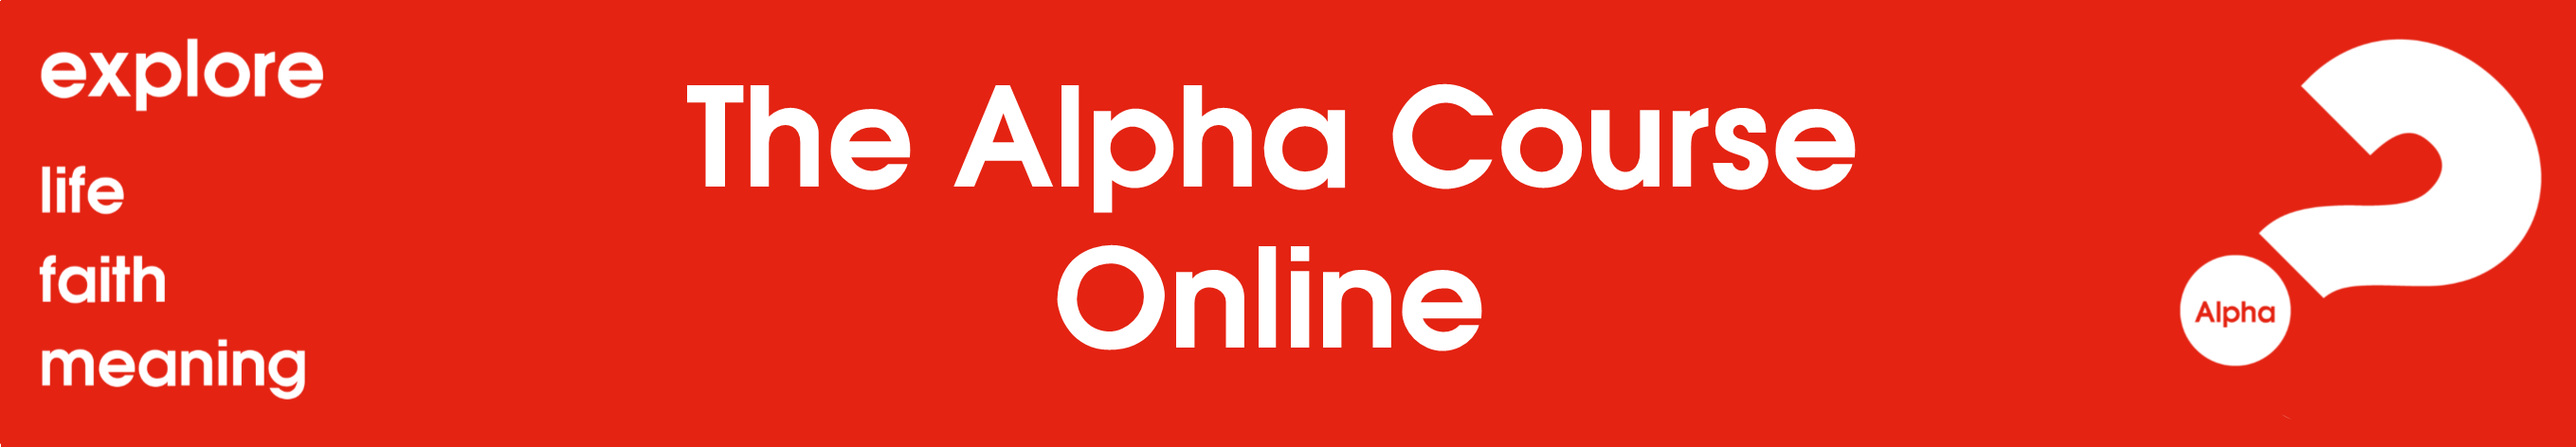 alpha banner 3